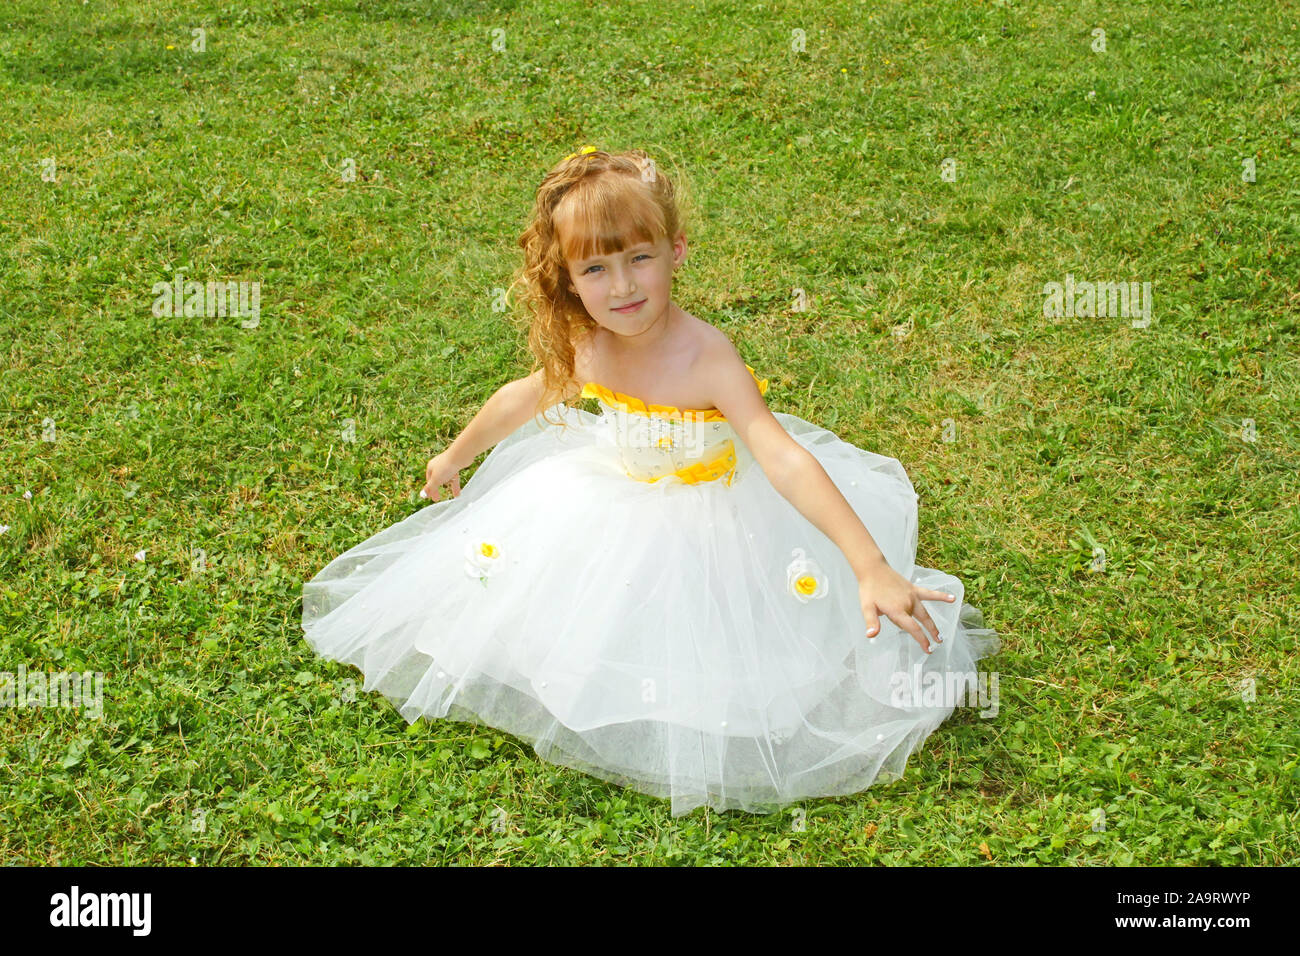 Kleines Mädchen in einem gelben festliches Kleid auf einem grünen Rasen Stockfoto